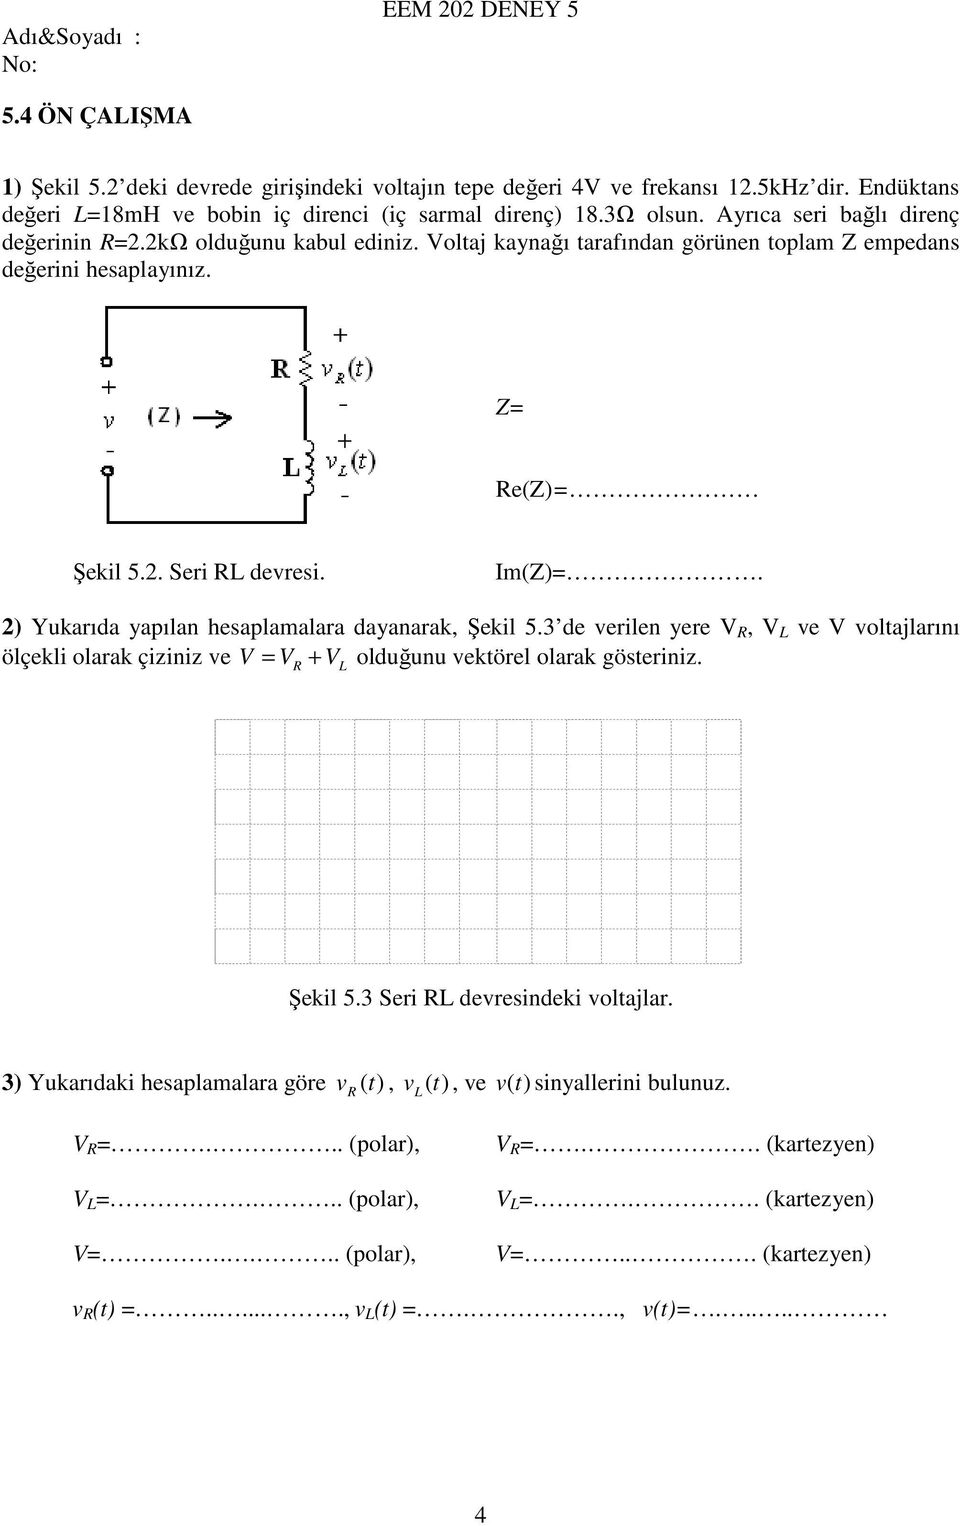 2) Yukarıda yapılan hesaplamalara dayanarak, Şekil 5.3 de verilen yere V R, V L ve V voltajlarını ölçekli olarak çiziniz ve V = VR + VL olduğunu vektörel olarak gösteriniz. Şekil 5.3 Seri RL devresindeki voltajlar.